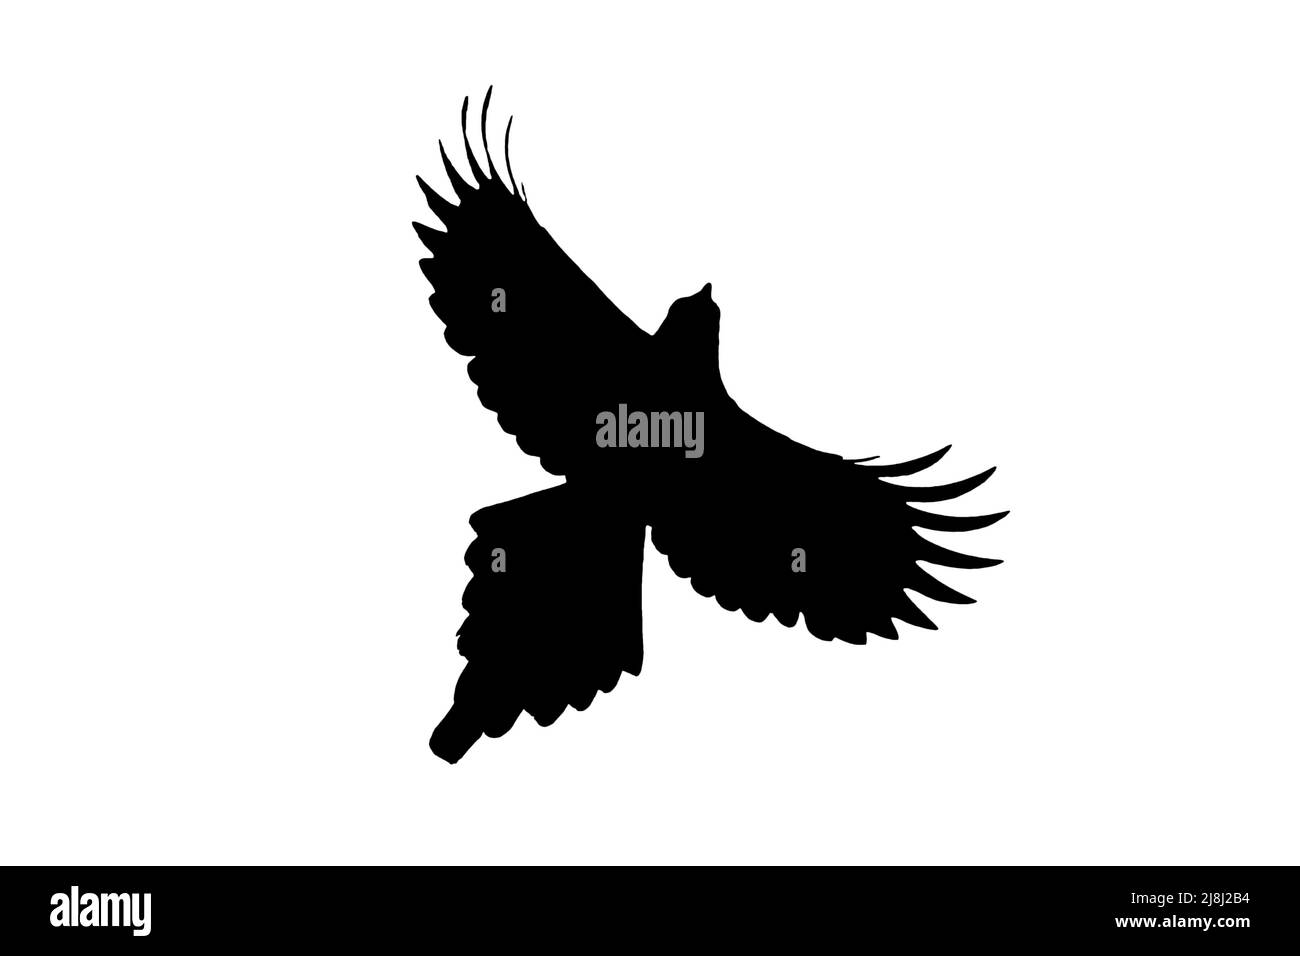 Silhouette di magpie eurasiatica / magpie comune (Pica pica) in volo delineata su sfondo bianco per mostrare le ali, la testa e la coda Foto Stock